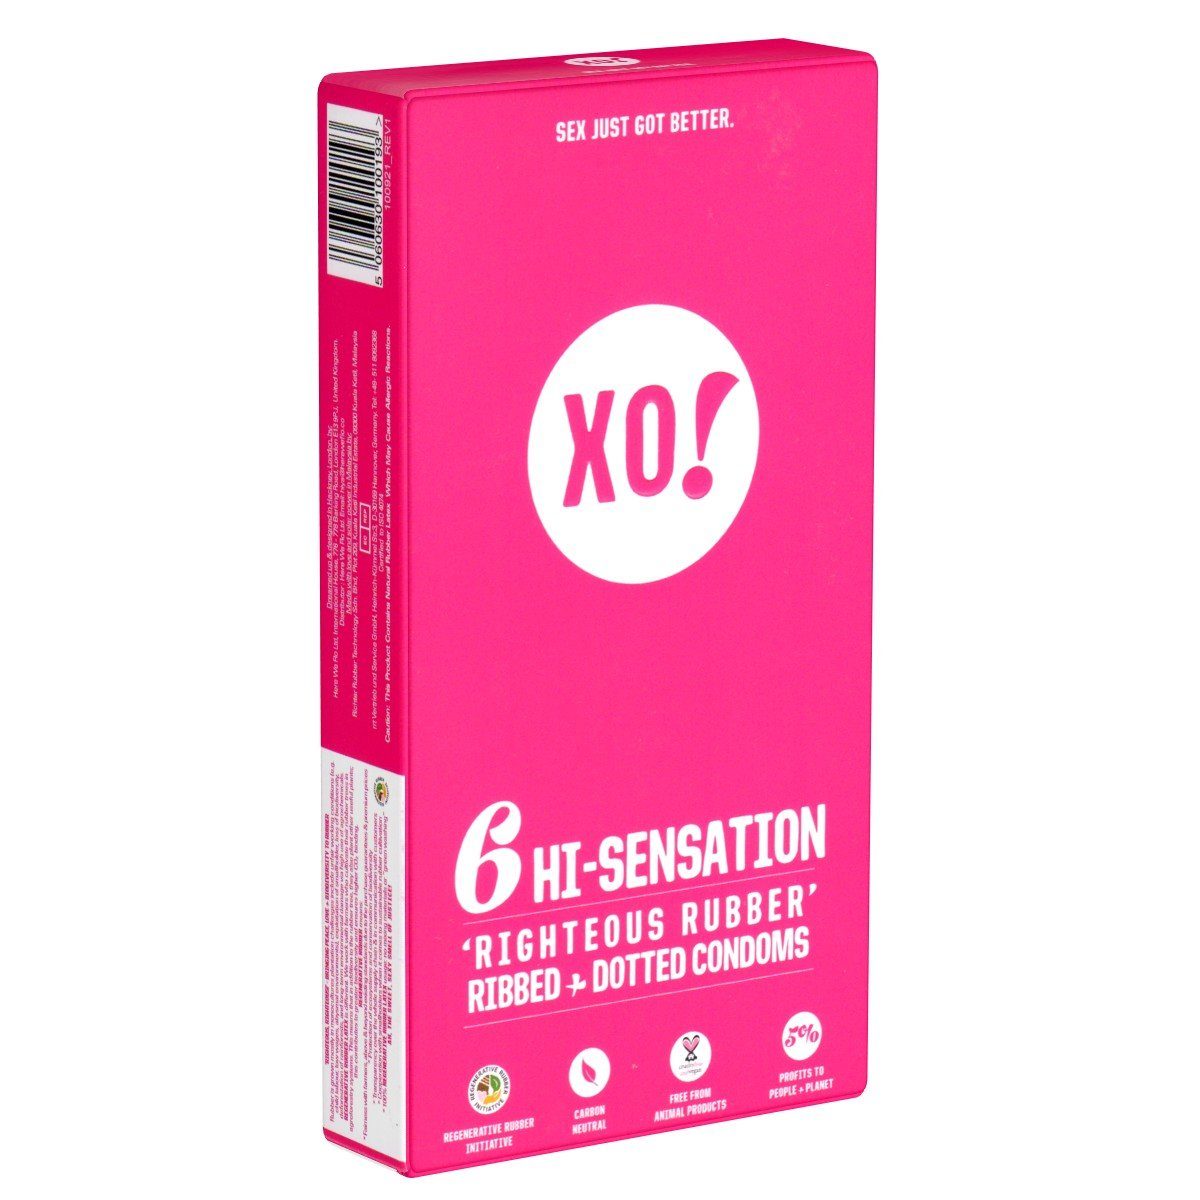 XO Kondome HI-Sensation Packung mit, 6 St., vegane, biologisch abbaubare Kondome -, stimulierende Kondome mit Rippen und Noppen